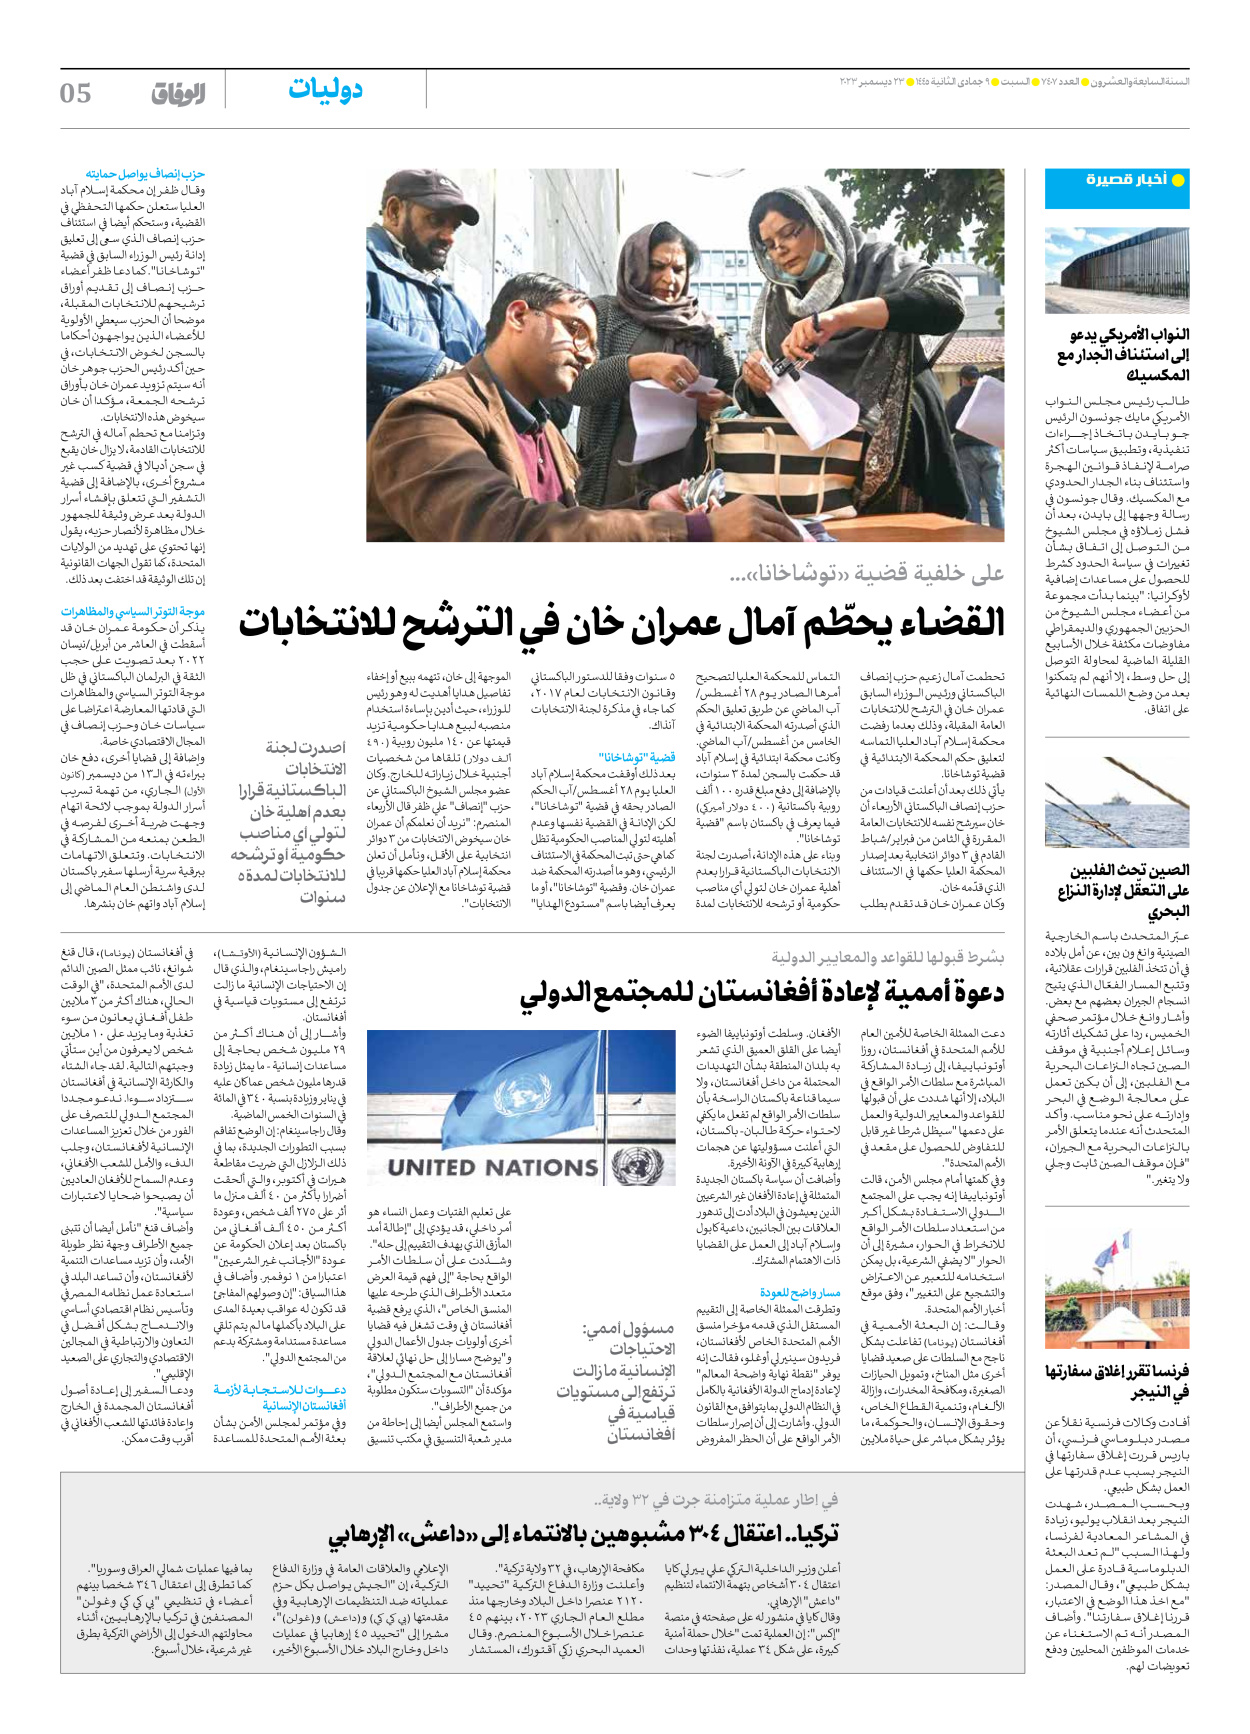 صحیفة ایران الدولیة الوفاق - العدد سبعة آلاف وأربعمائة وسبعة - ٢٣ ديسمبر ٢٠٢٣ - الصفحة ٥